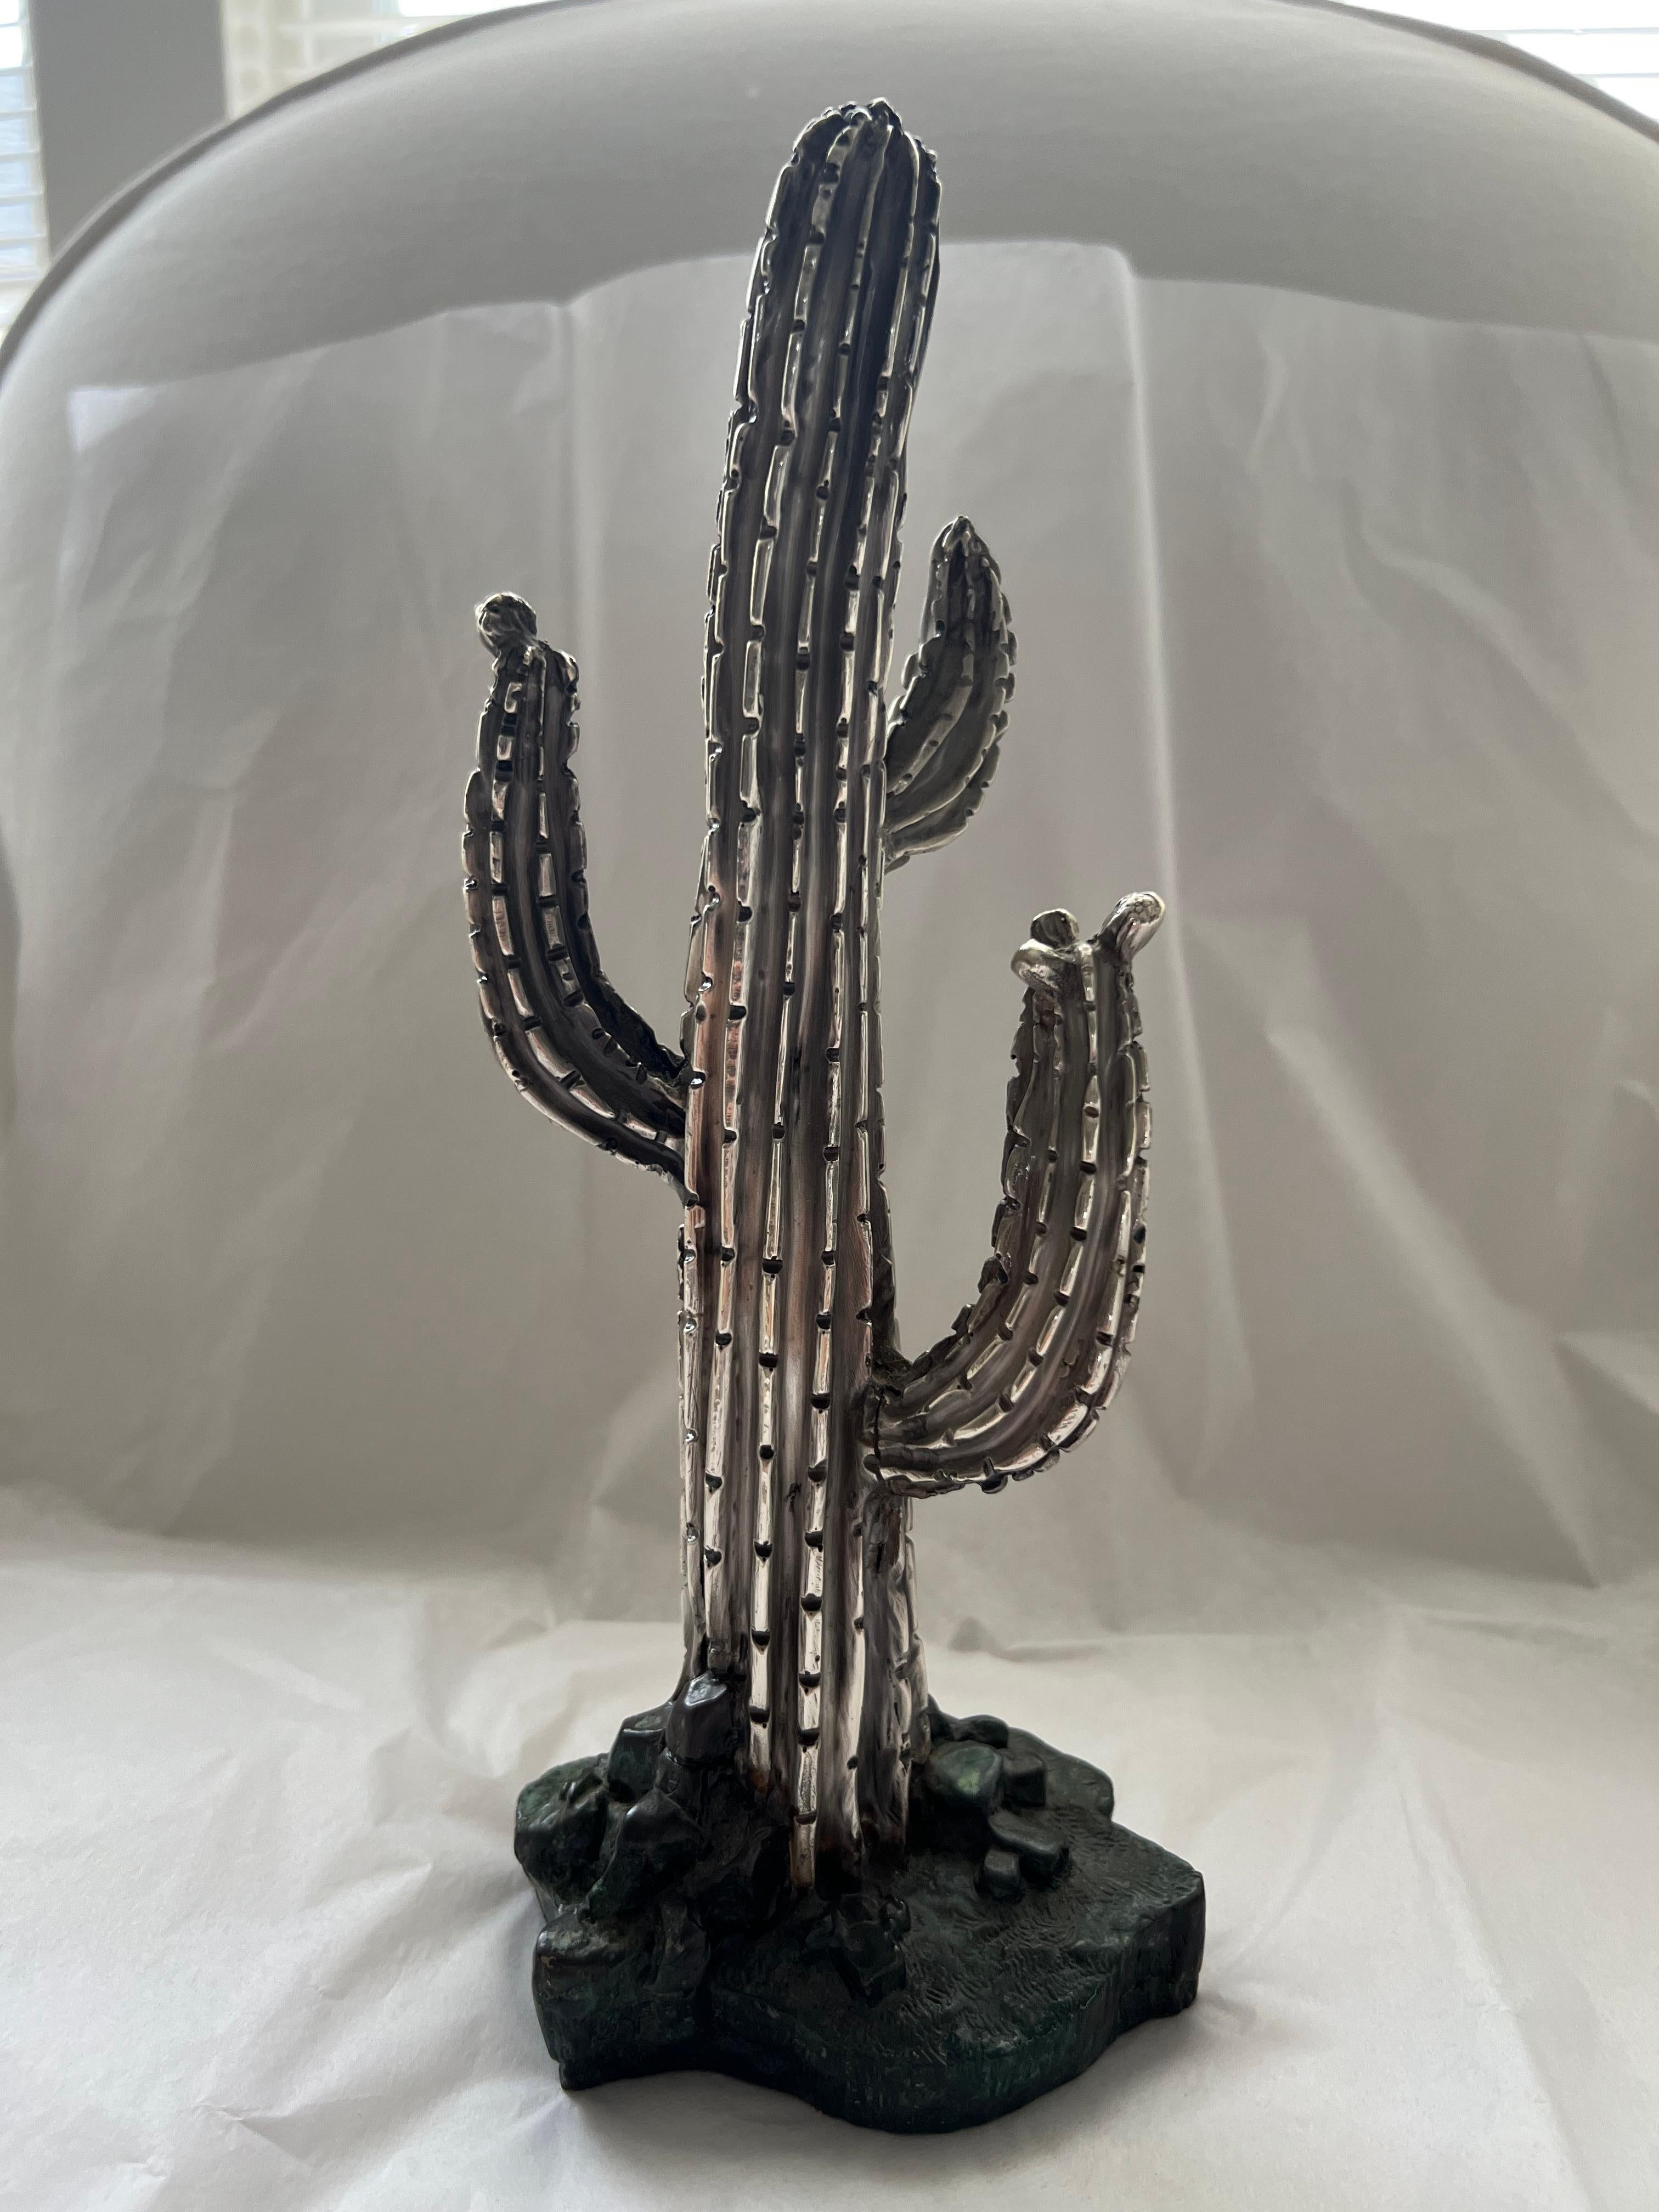 Antique Silver Cactus Tree Statue Galt Vintage Estate Classic Decoration Item In Fair Condition For Sale In Oakton, VA